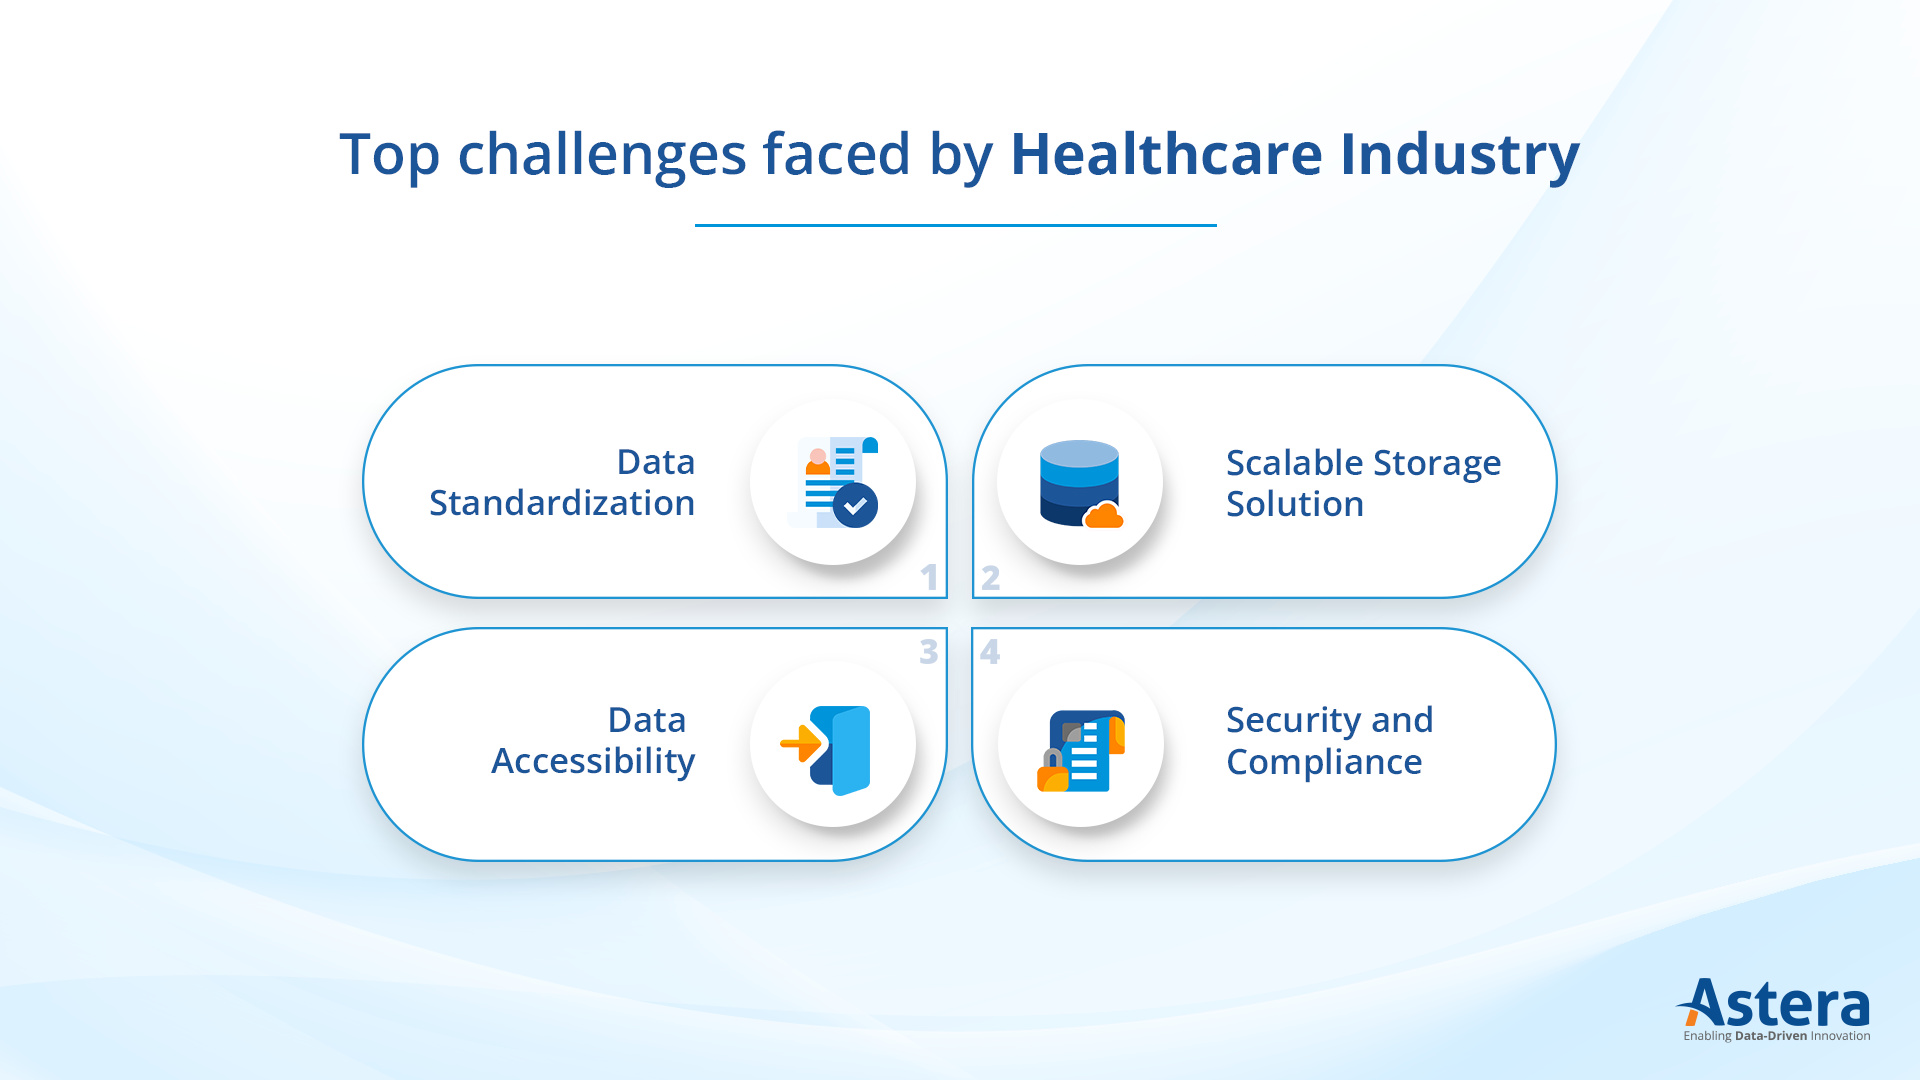 Les défis en matière de données auxquels est confronté le secteur de la santé